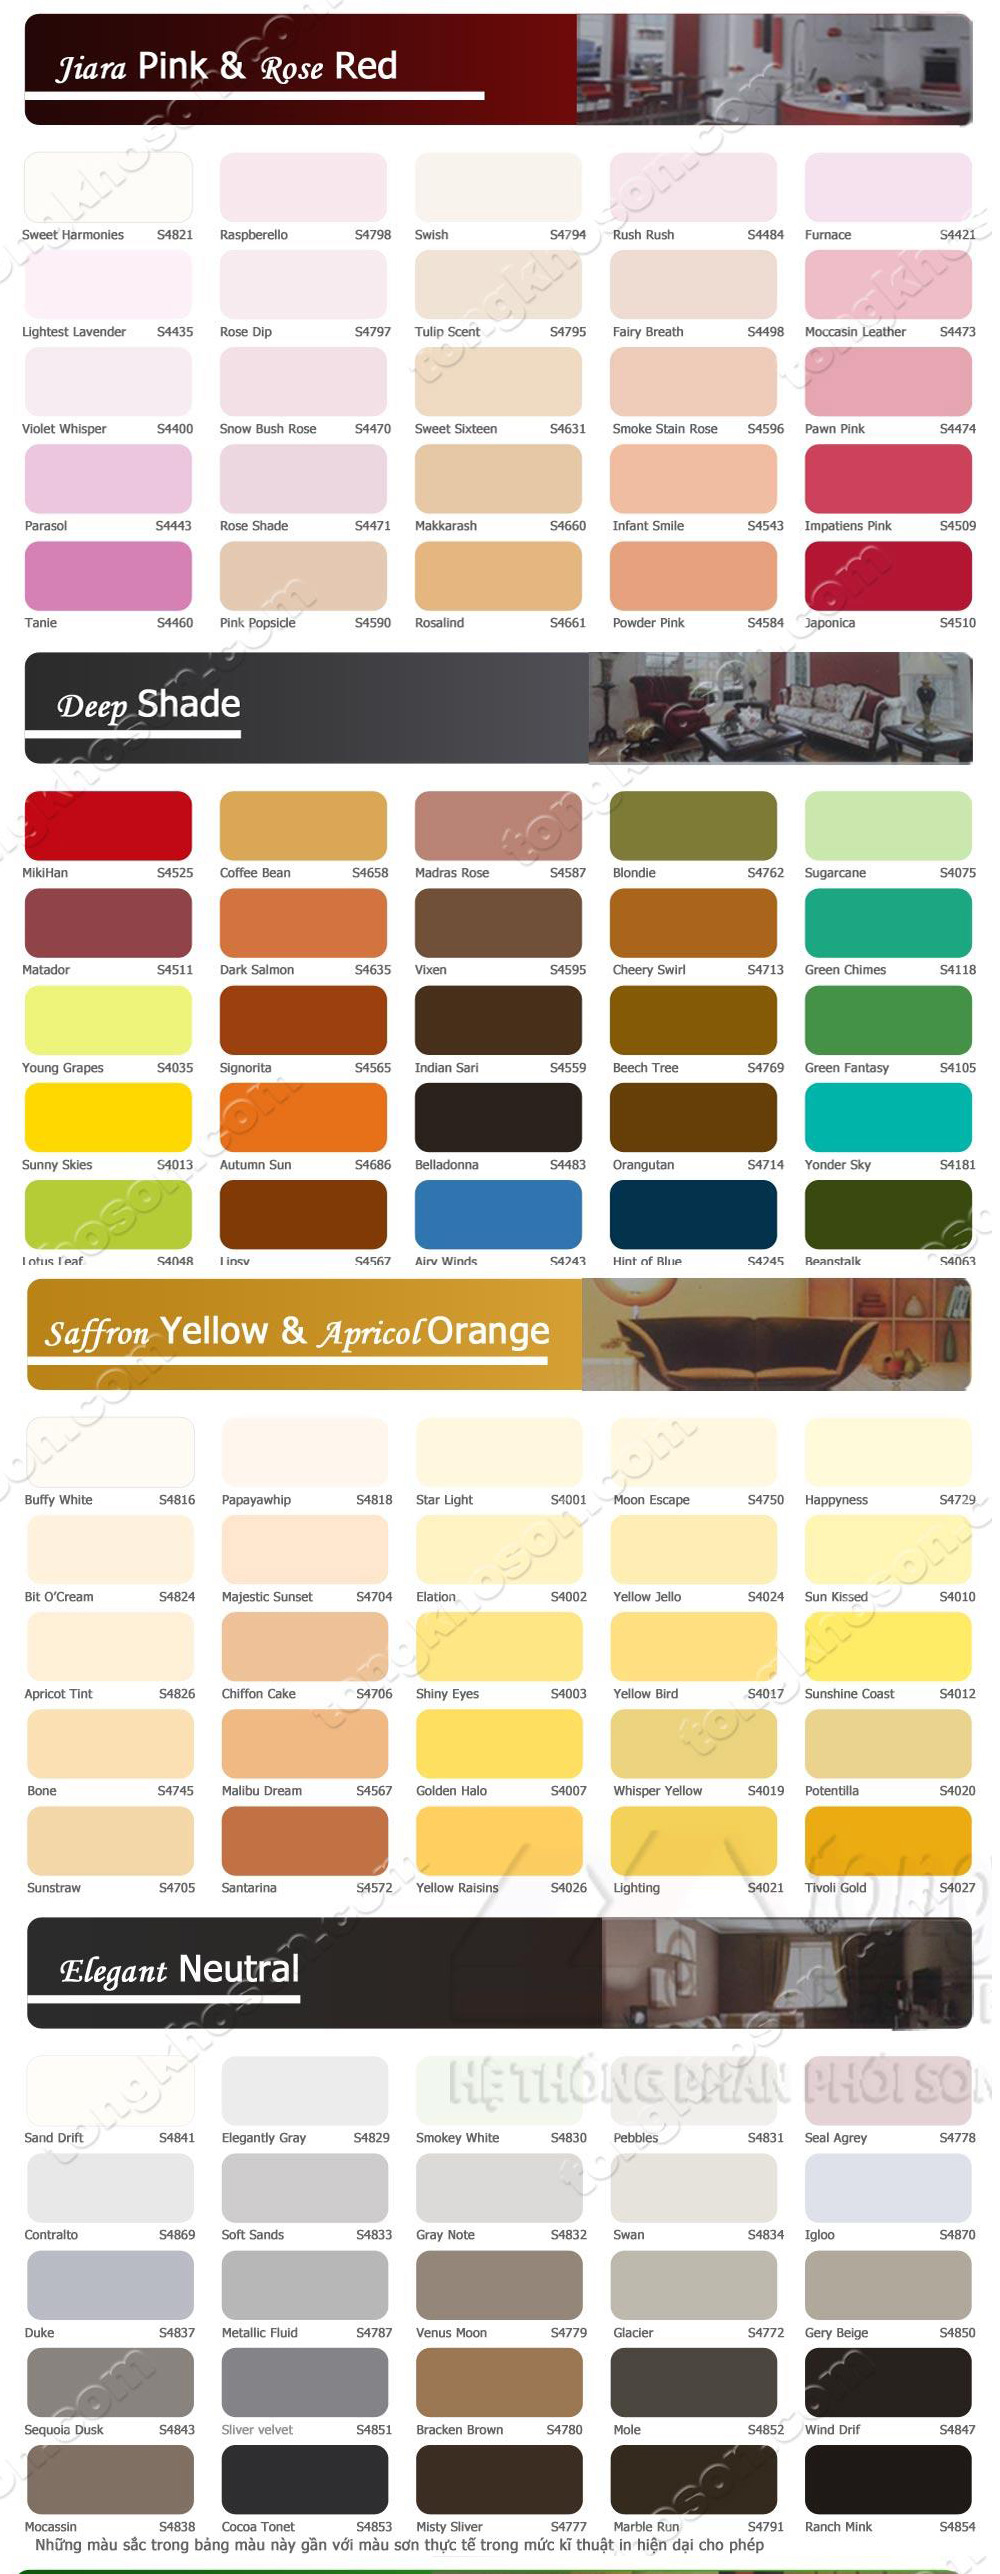 Bảng màu sơn Spec - một kho tàng màu sắc đa dạng đang chờ đợi bạn khám phá. Hãy dành chút thời gian để tham khảo bảng màu sơn Spec để có được lựa chọn sơn phù hợp nhất cho ngôi nhà của bạn.